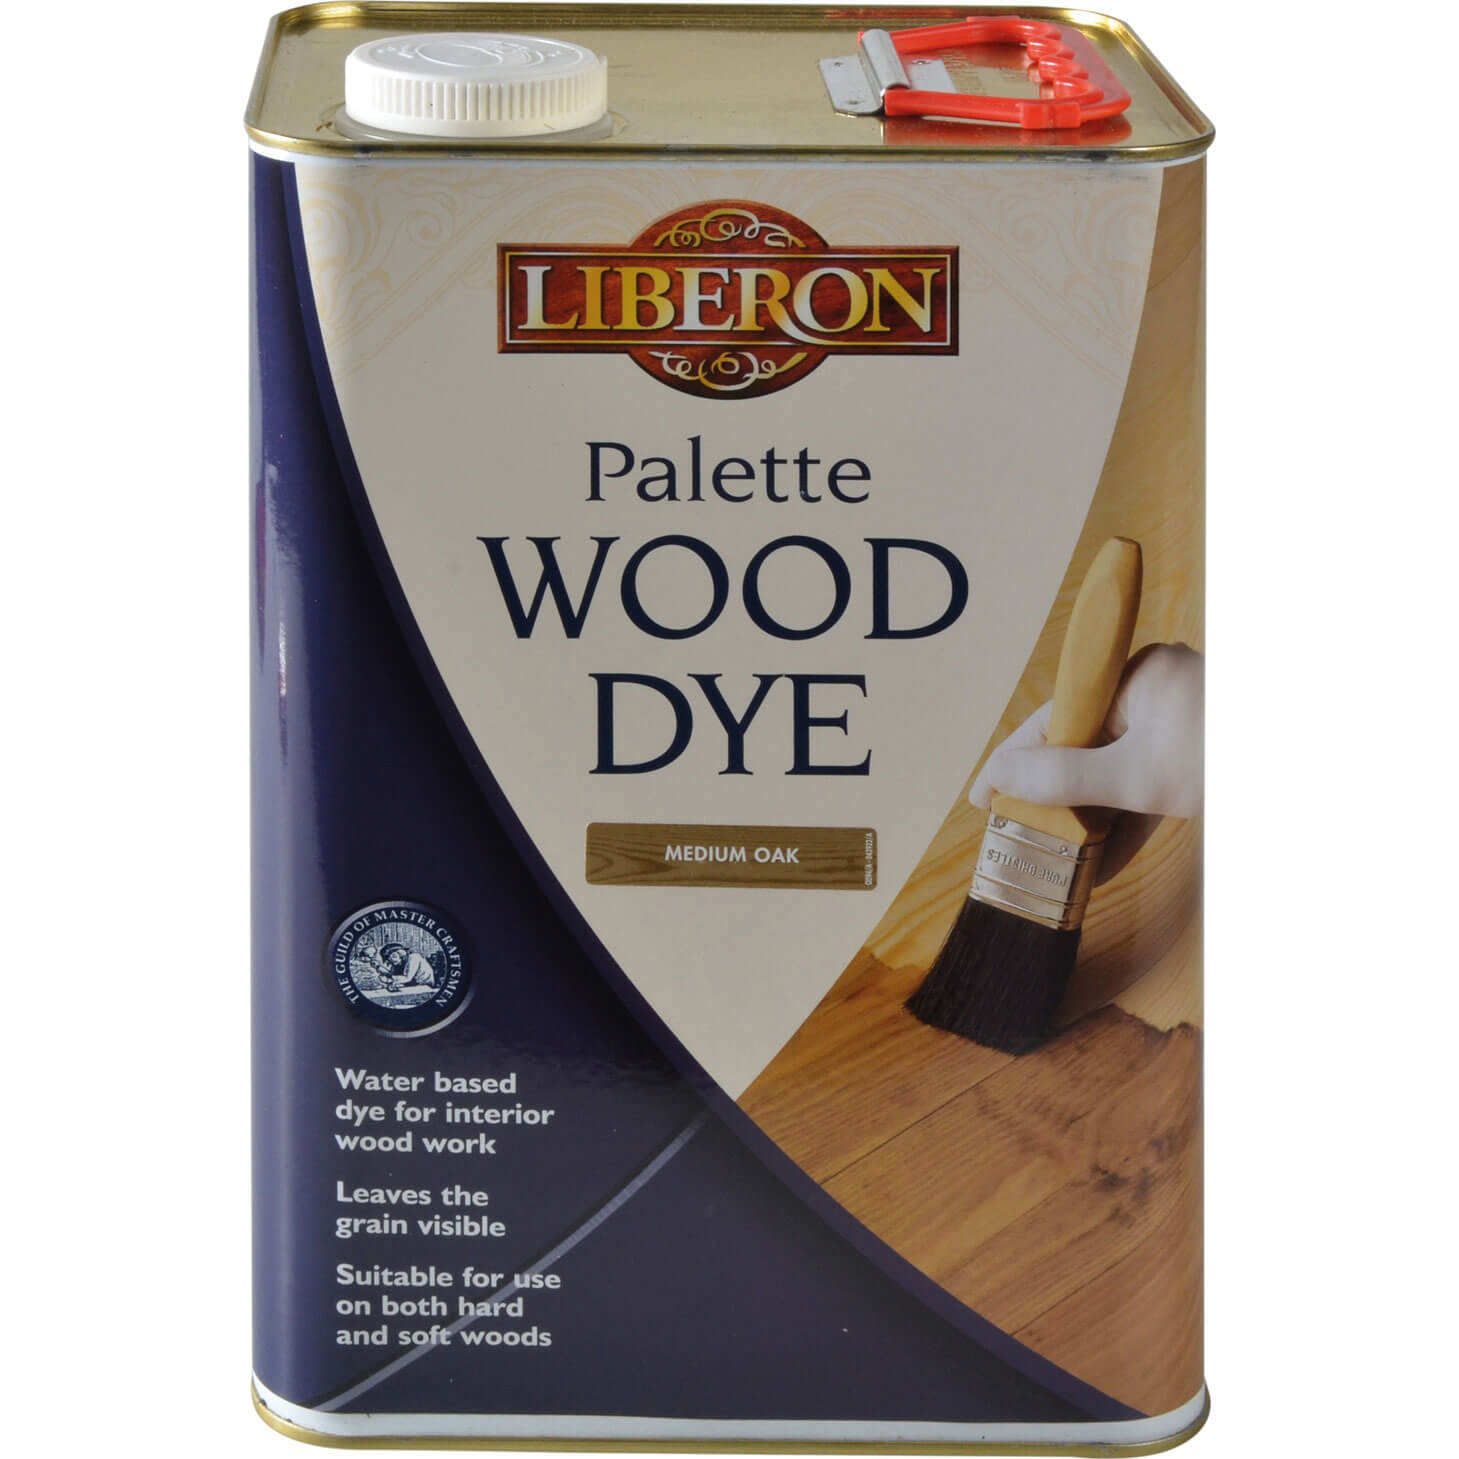 Photos - Varnish Liberon Palette Wood Dye Medium Oak 5l 